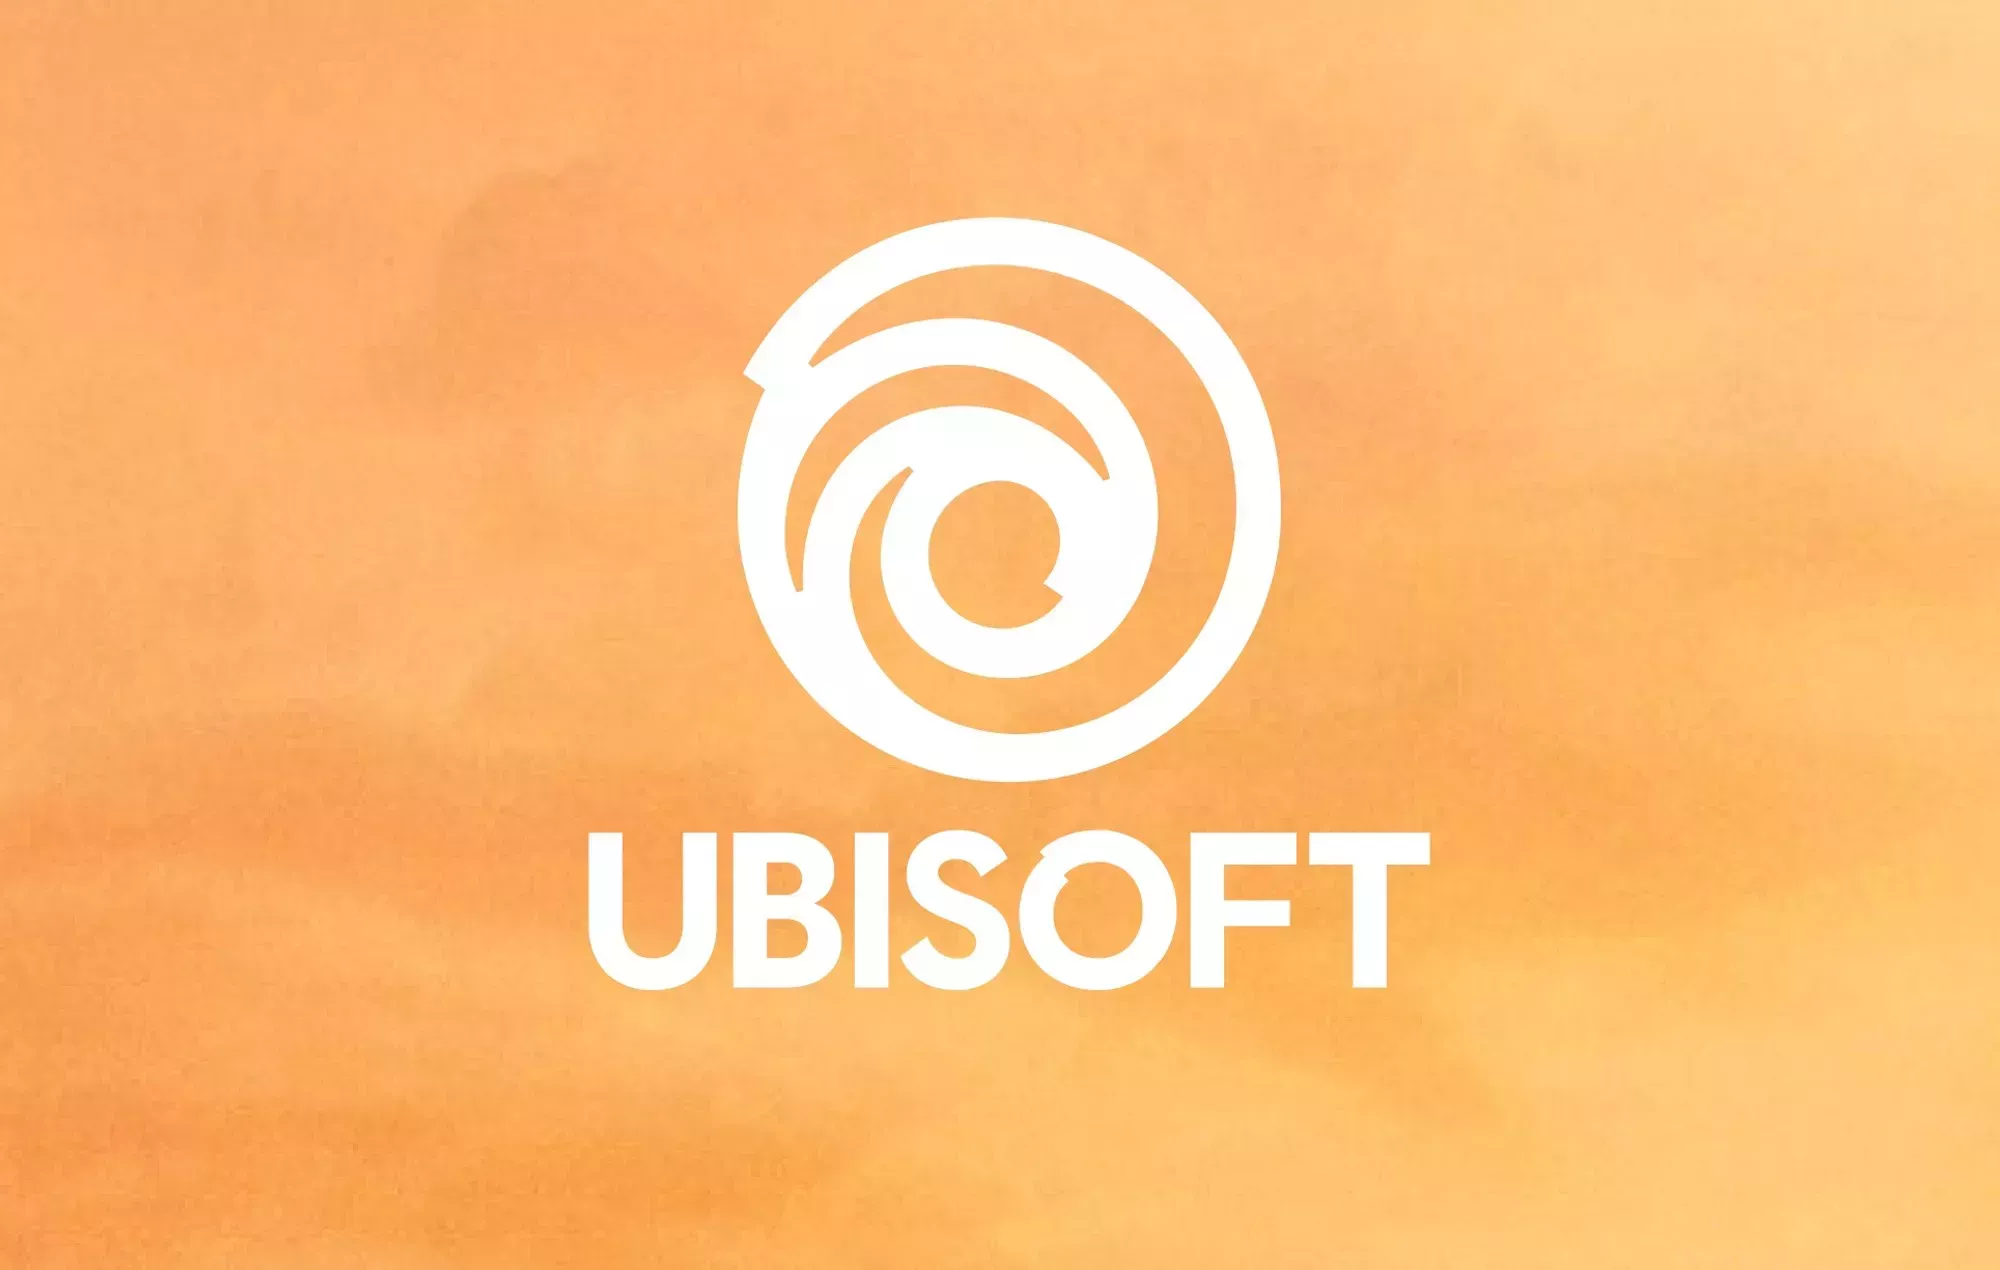 Detenido un antiguo empleado de Ubisoft tras una investigación por acoso y agresión sexual